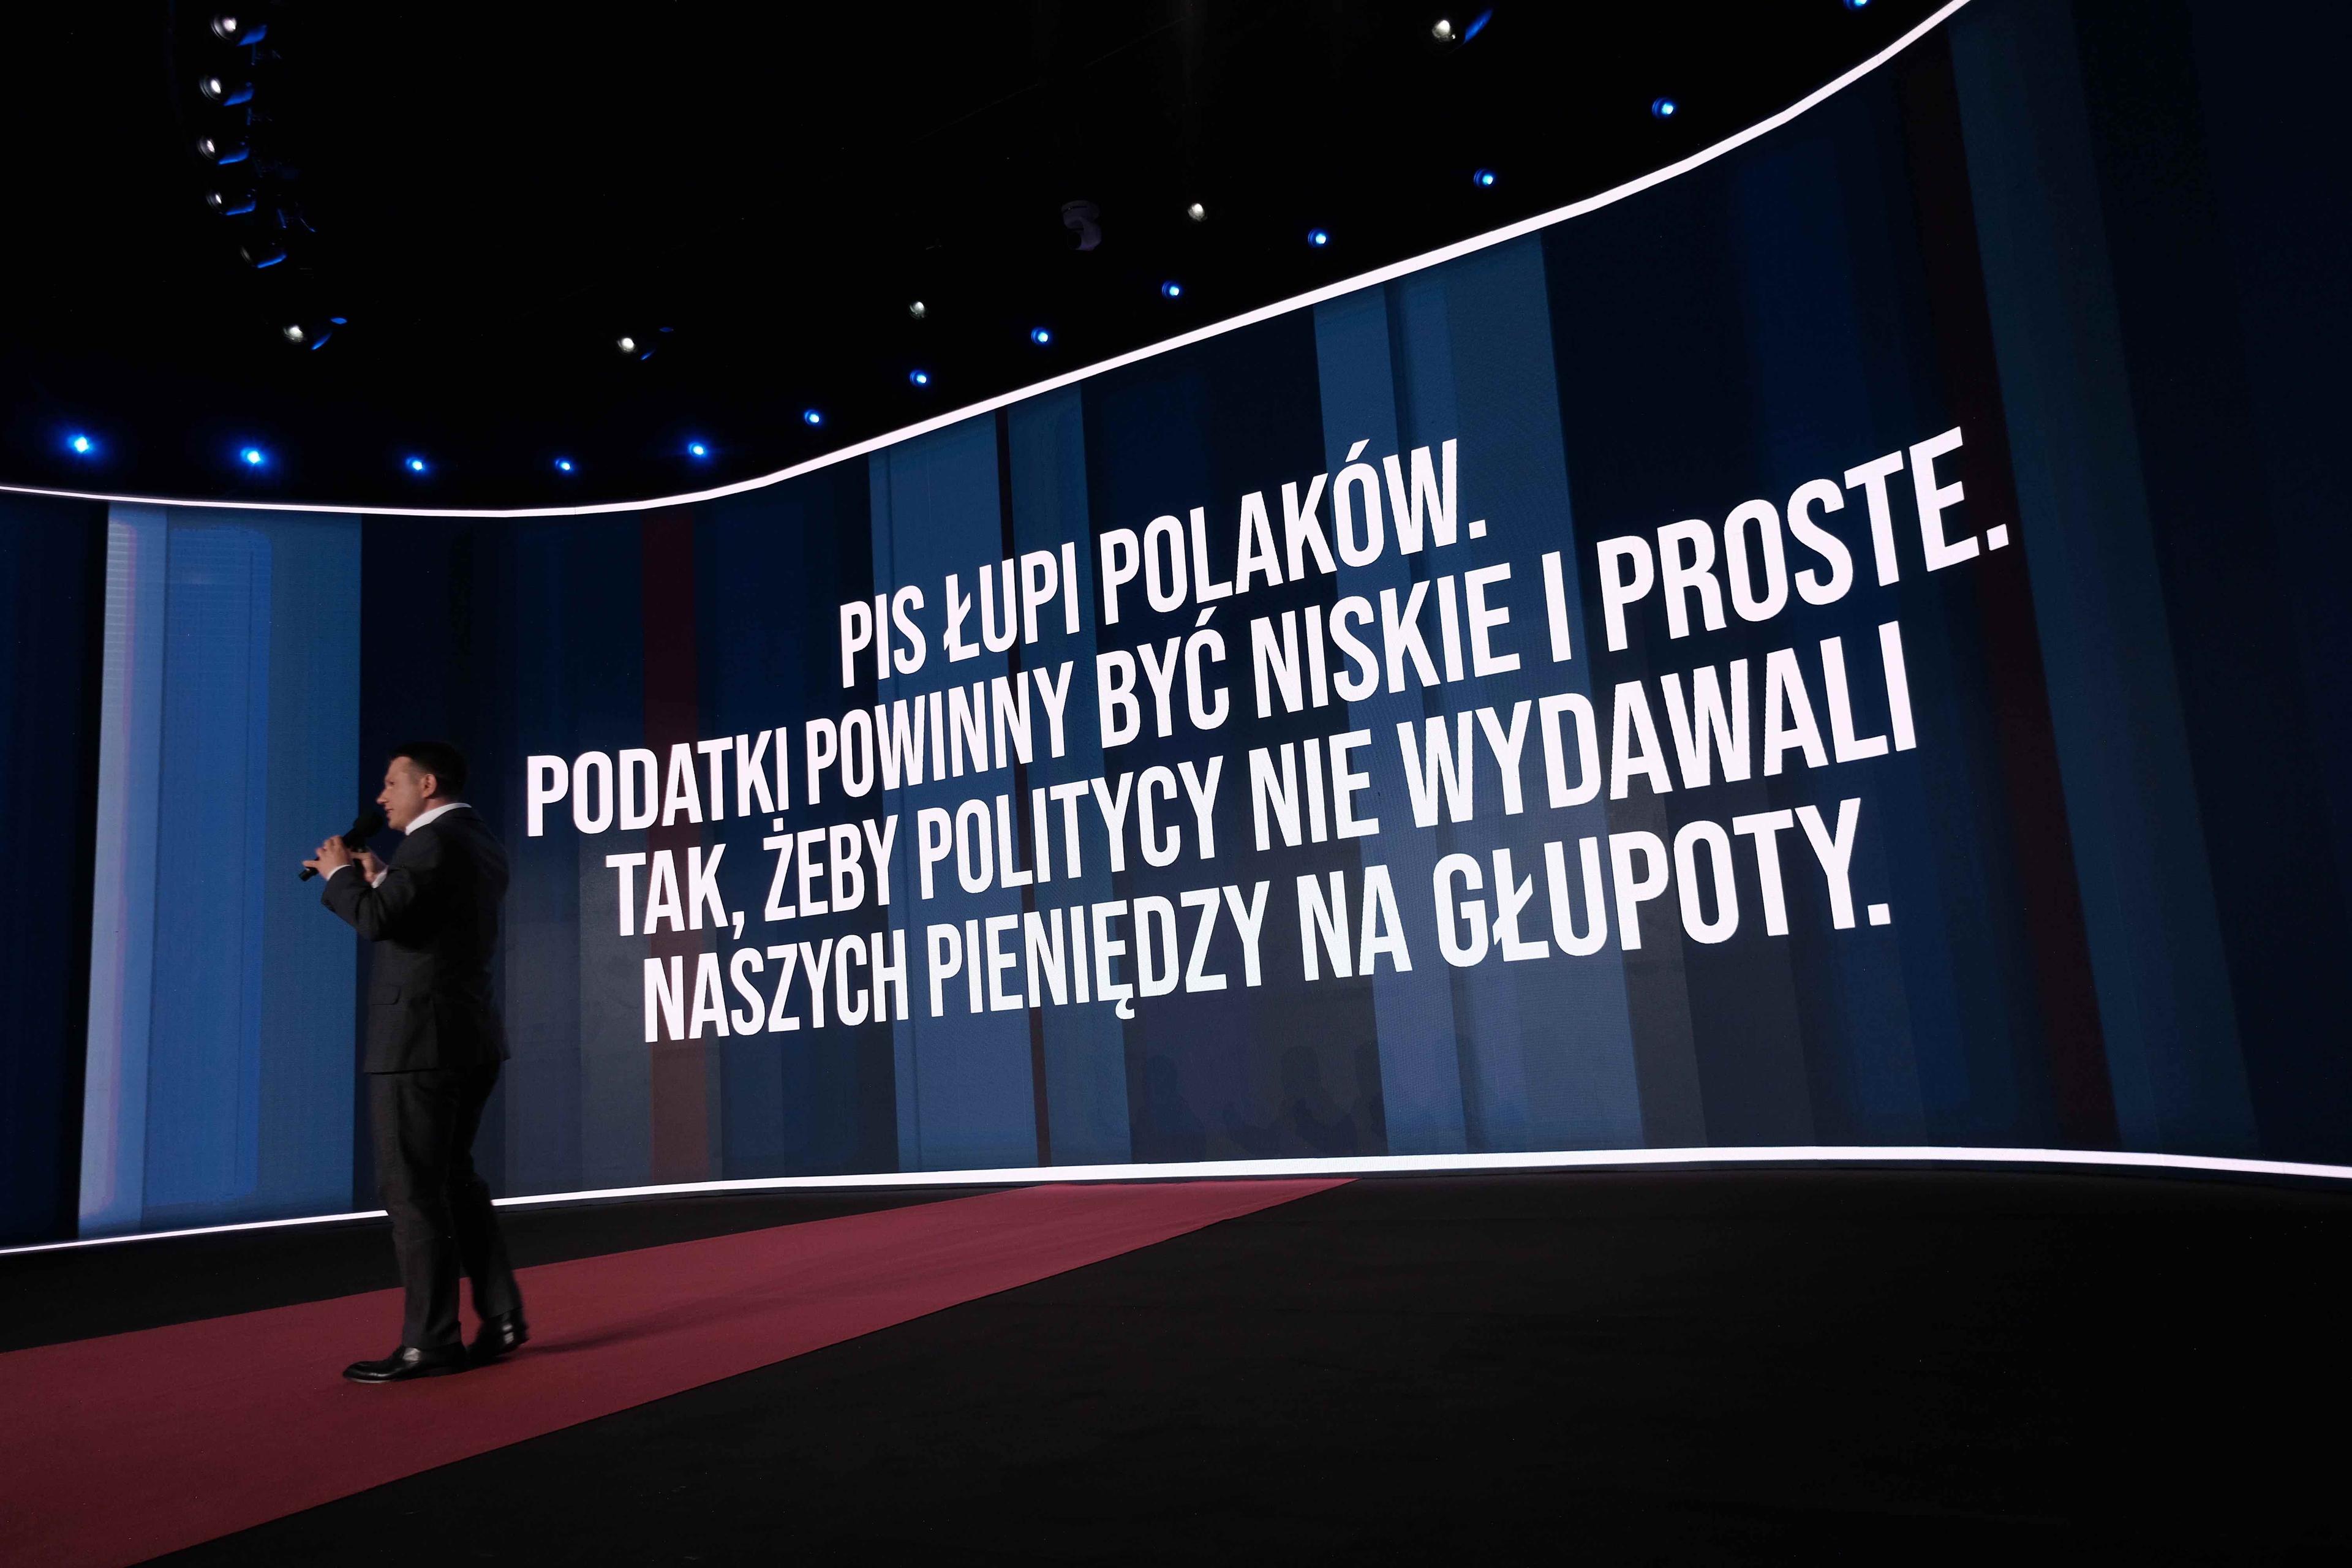 Mężczyzna przemawia na scenie podczas konwencyji partyjnej, w tle na ekranie widać hasło: „PiS łupi Polaków. Podatki powinny być niskie i proste, tak żeby politycy nie wydawali naszych pieniędzy na głupoty.